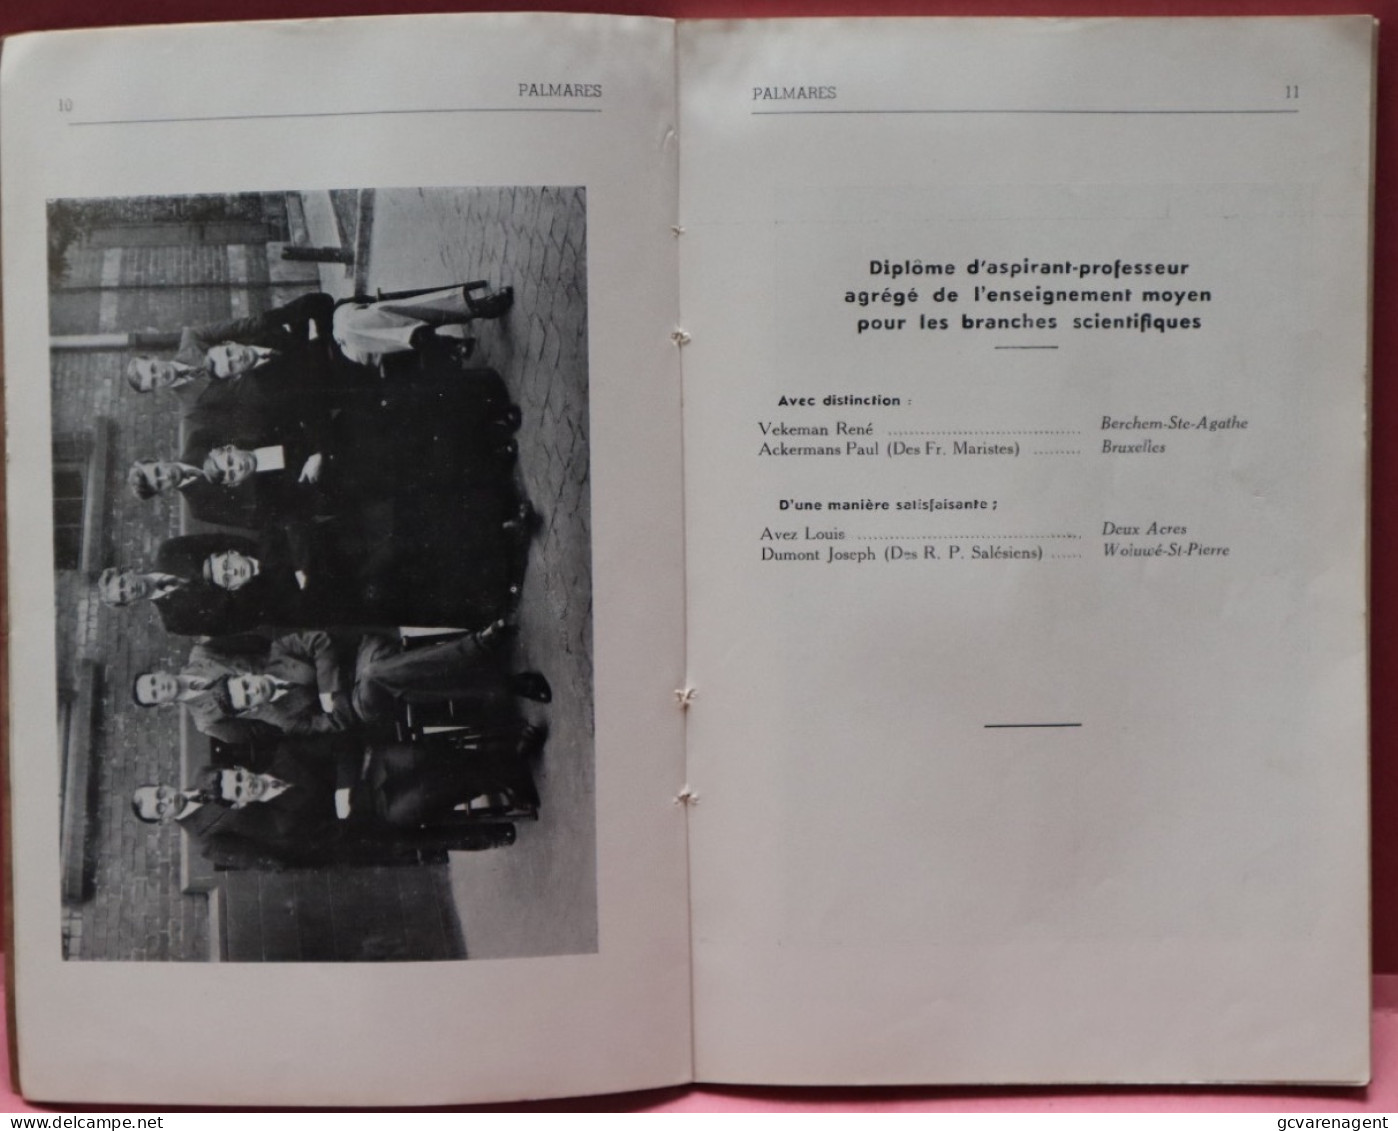 1936-1937  PALMARES NORMAALSCHOLEN SINT THOMAS  NIEUWLAND 198 BRUSSEL  - ZIE BESCHRIJF EN AFBEELDINGEN